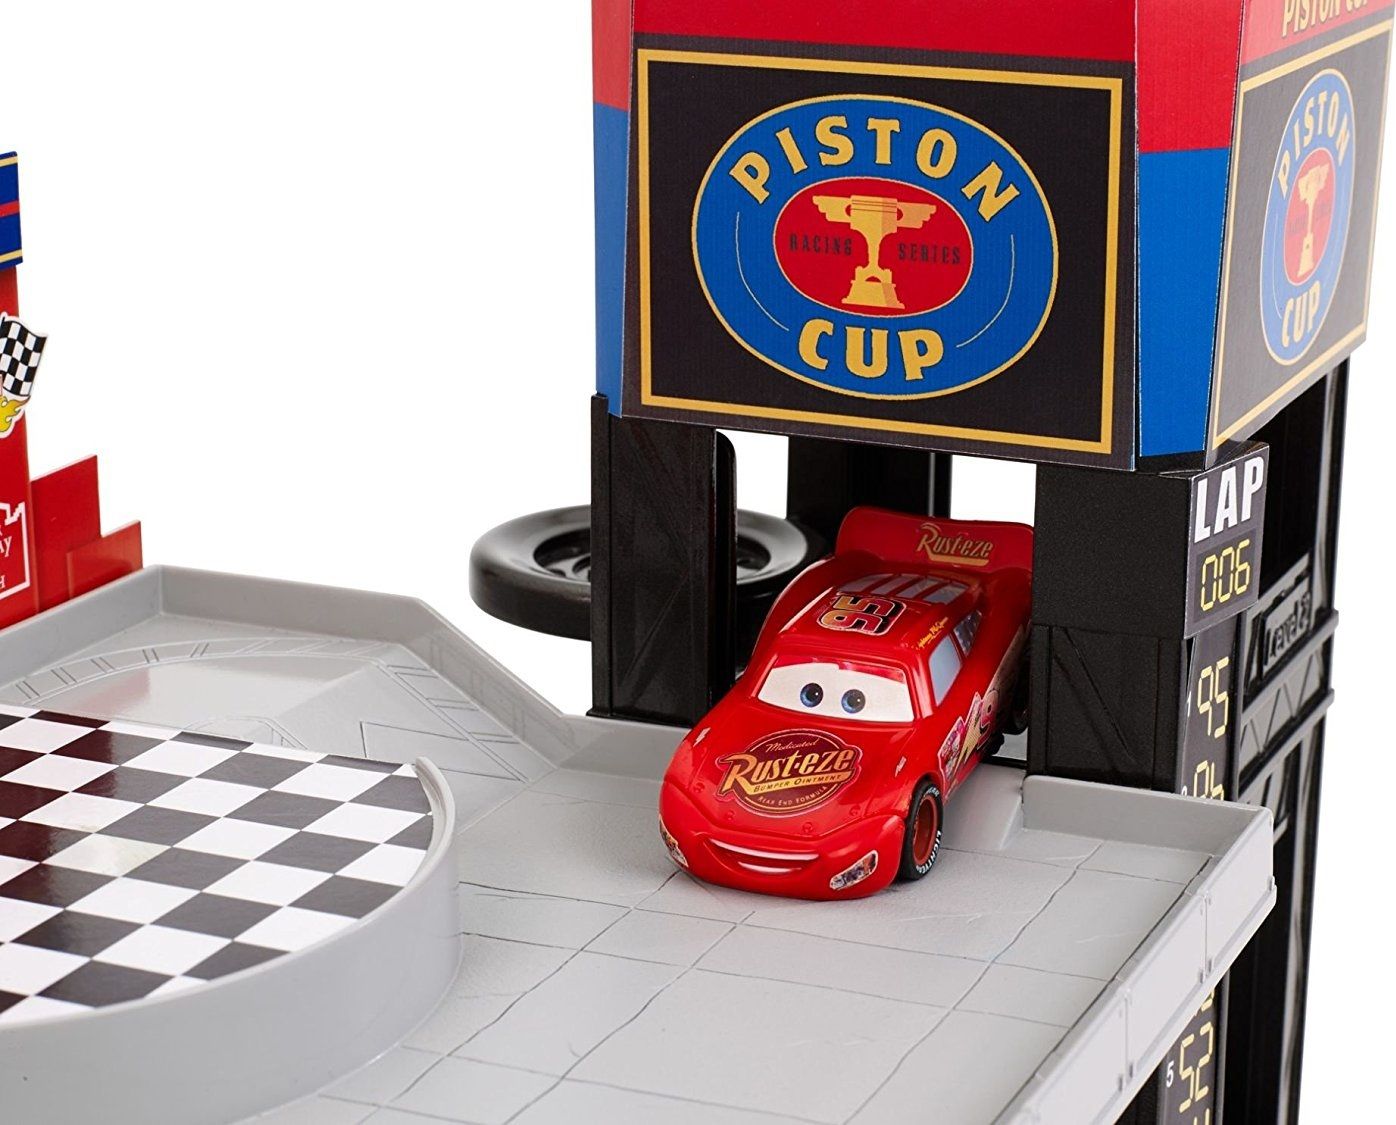 Mattel Игровой набор "Тачки. Большой гараж" (Cars - Racing Garage)